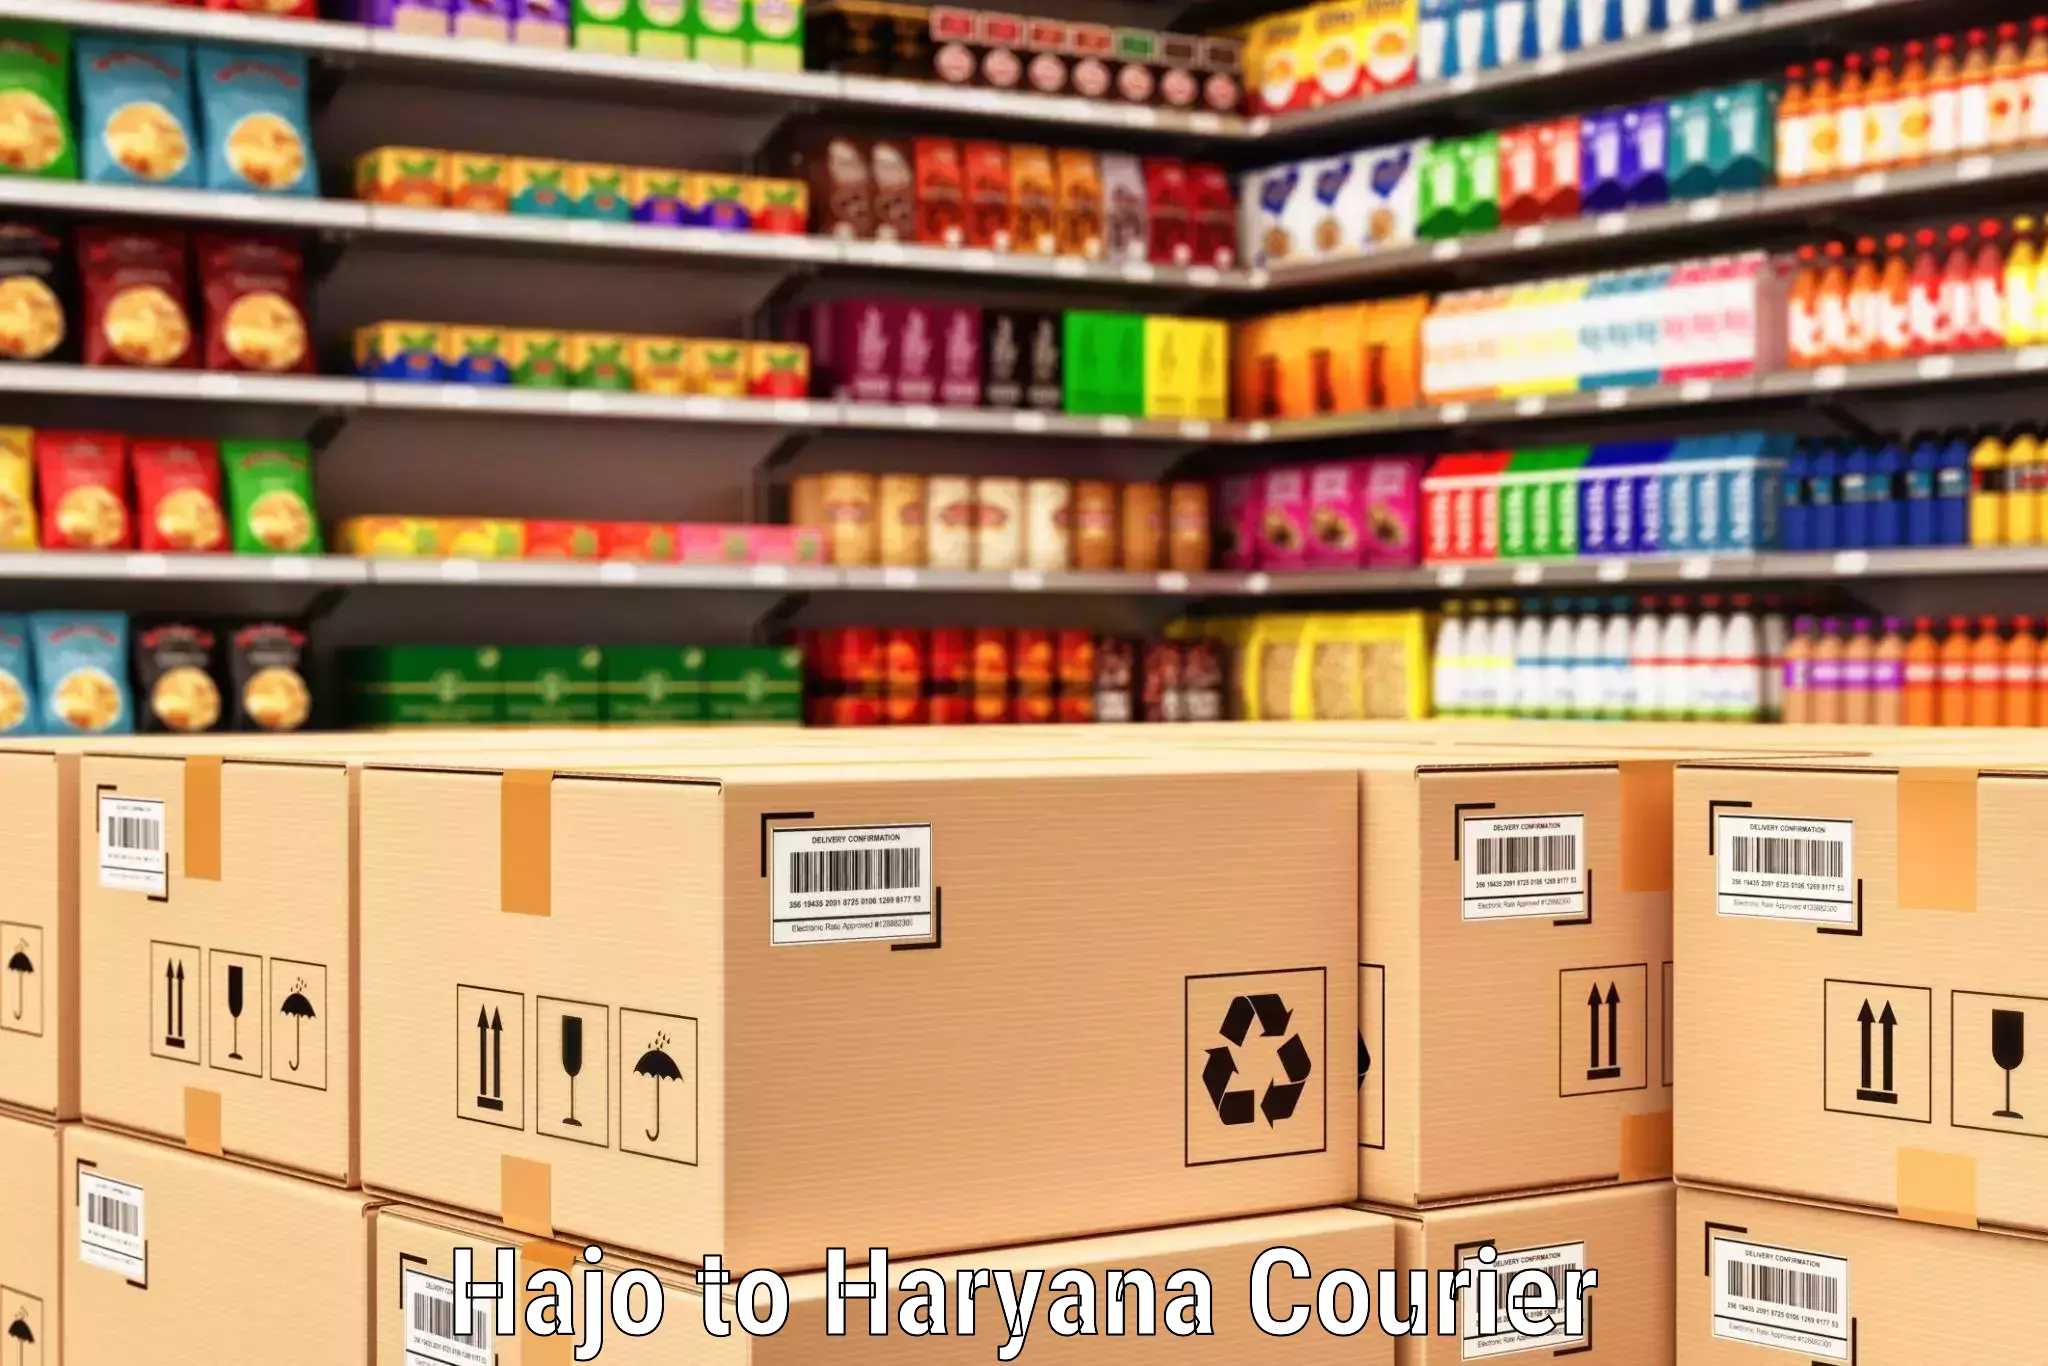 Supply chain efficiency Hajo to Gohana